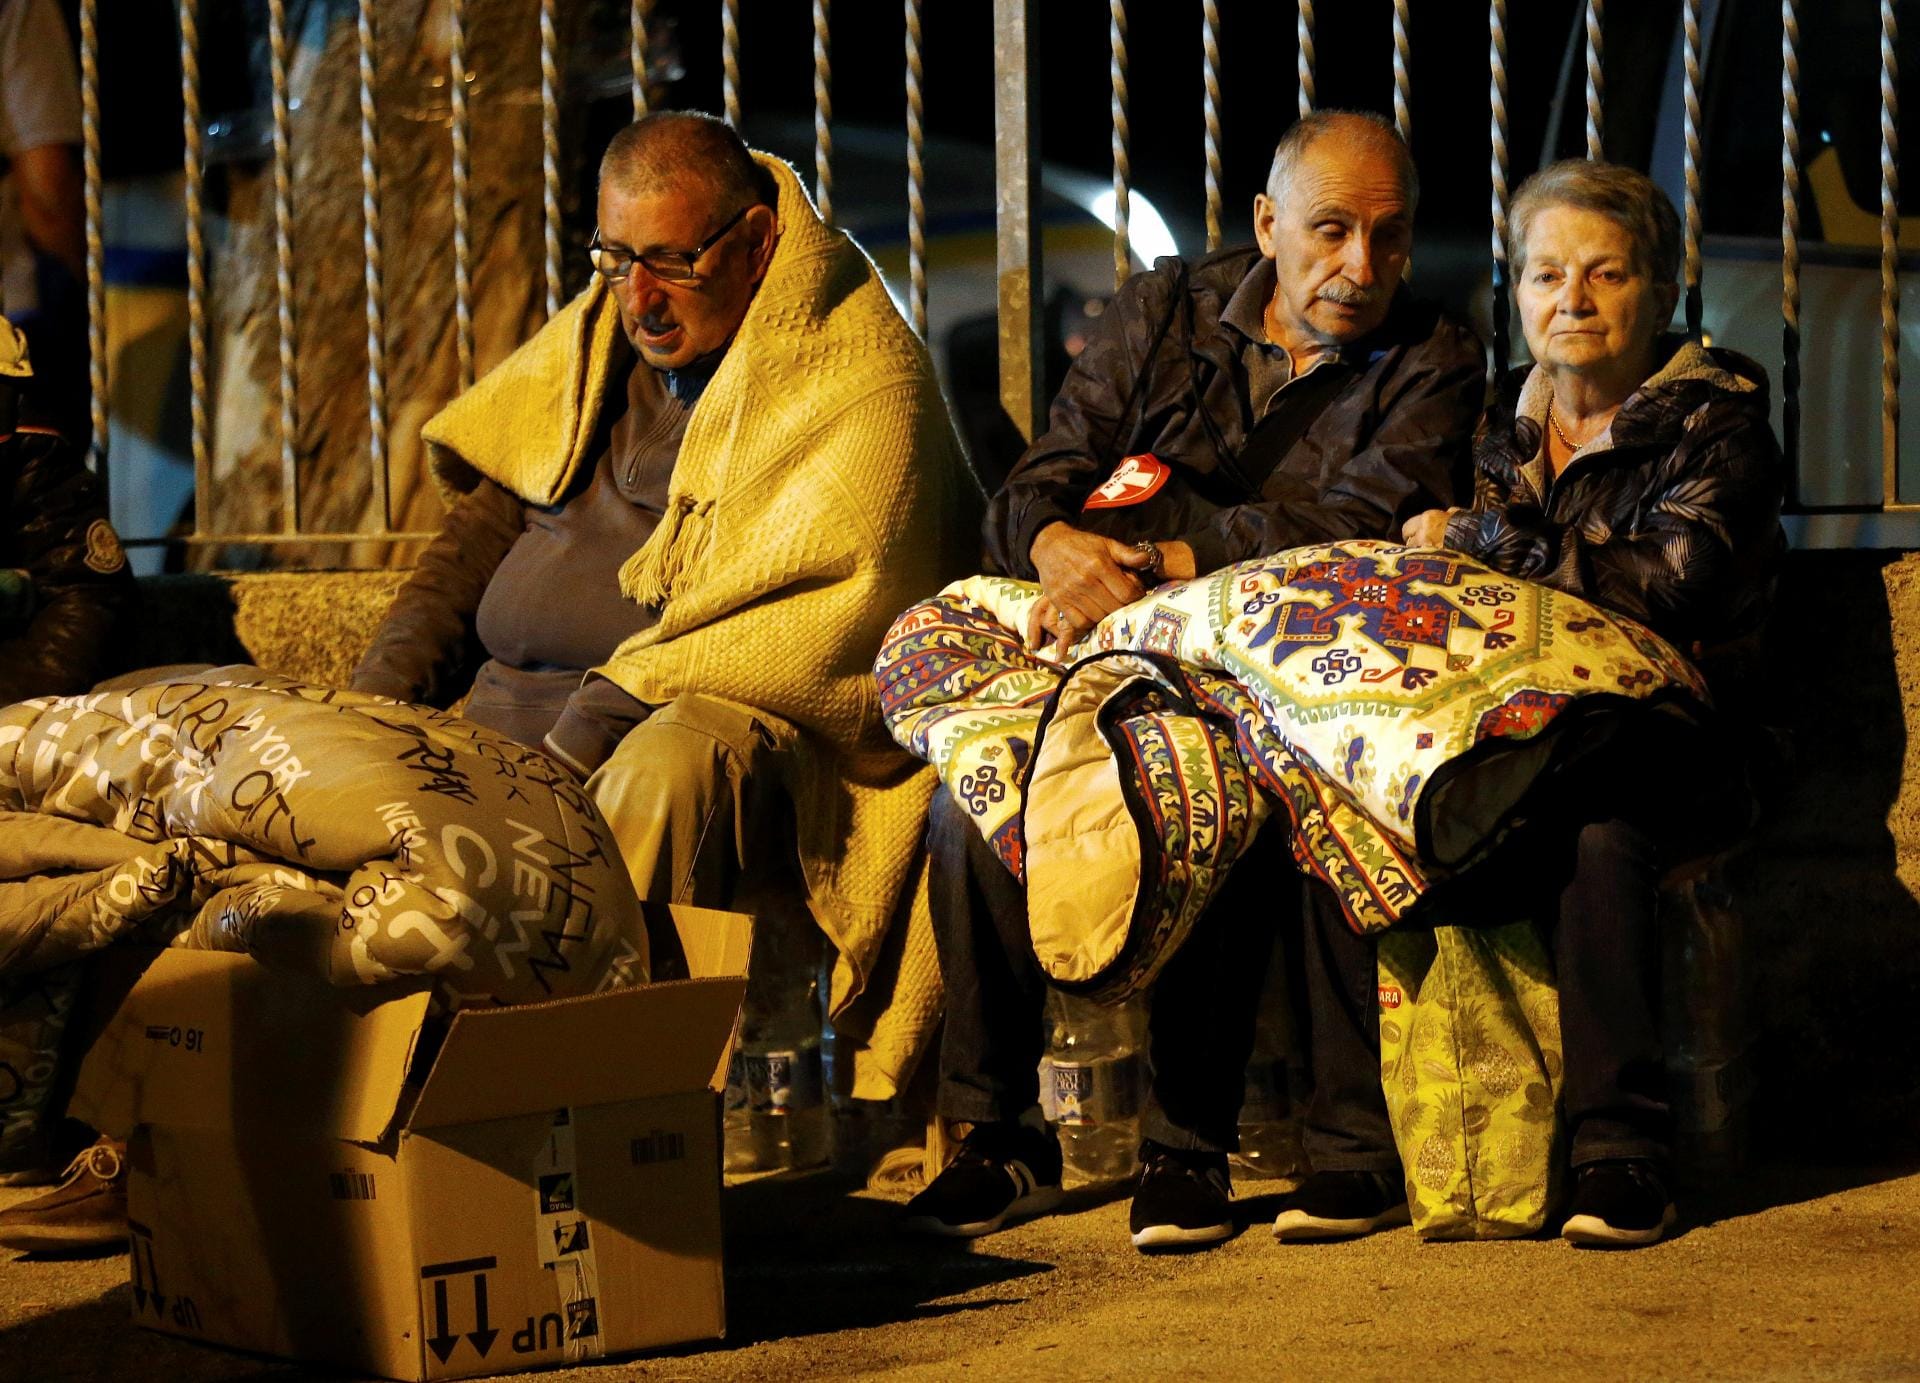 Für hunderte Menschen im mittelitalienischen Amatrice ist es die erste von vielen obdachlosen Nächten. Das verheerende Erdbeben mit mindestens 247 Toten kam um drei Uhr morgens, weshalb manche Überlebende nun in Schlafanzügen und Hausschuhen herumlaufen.